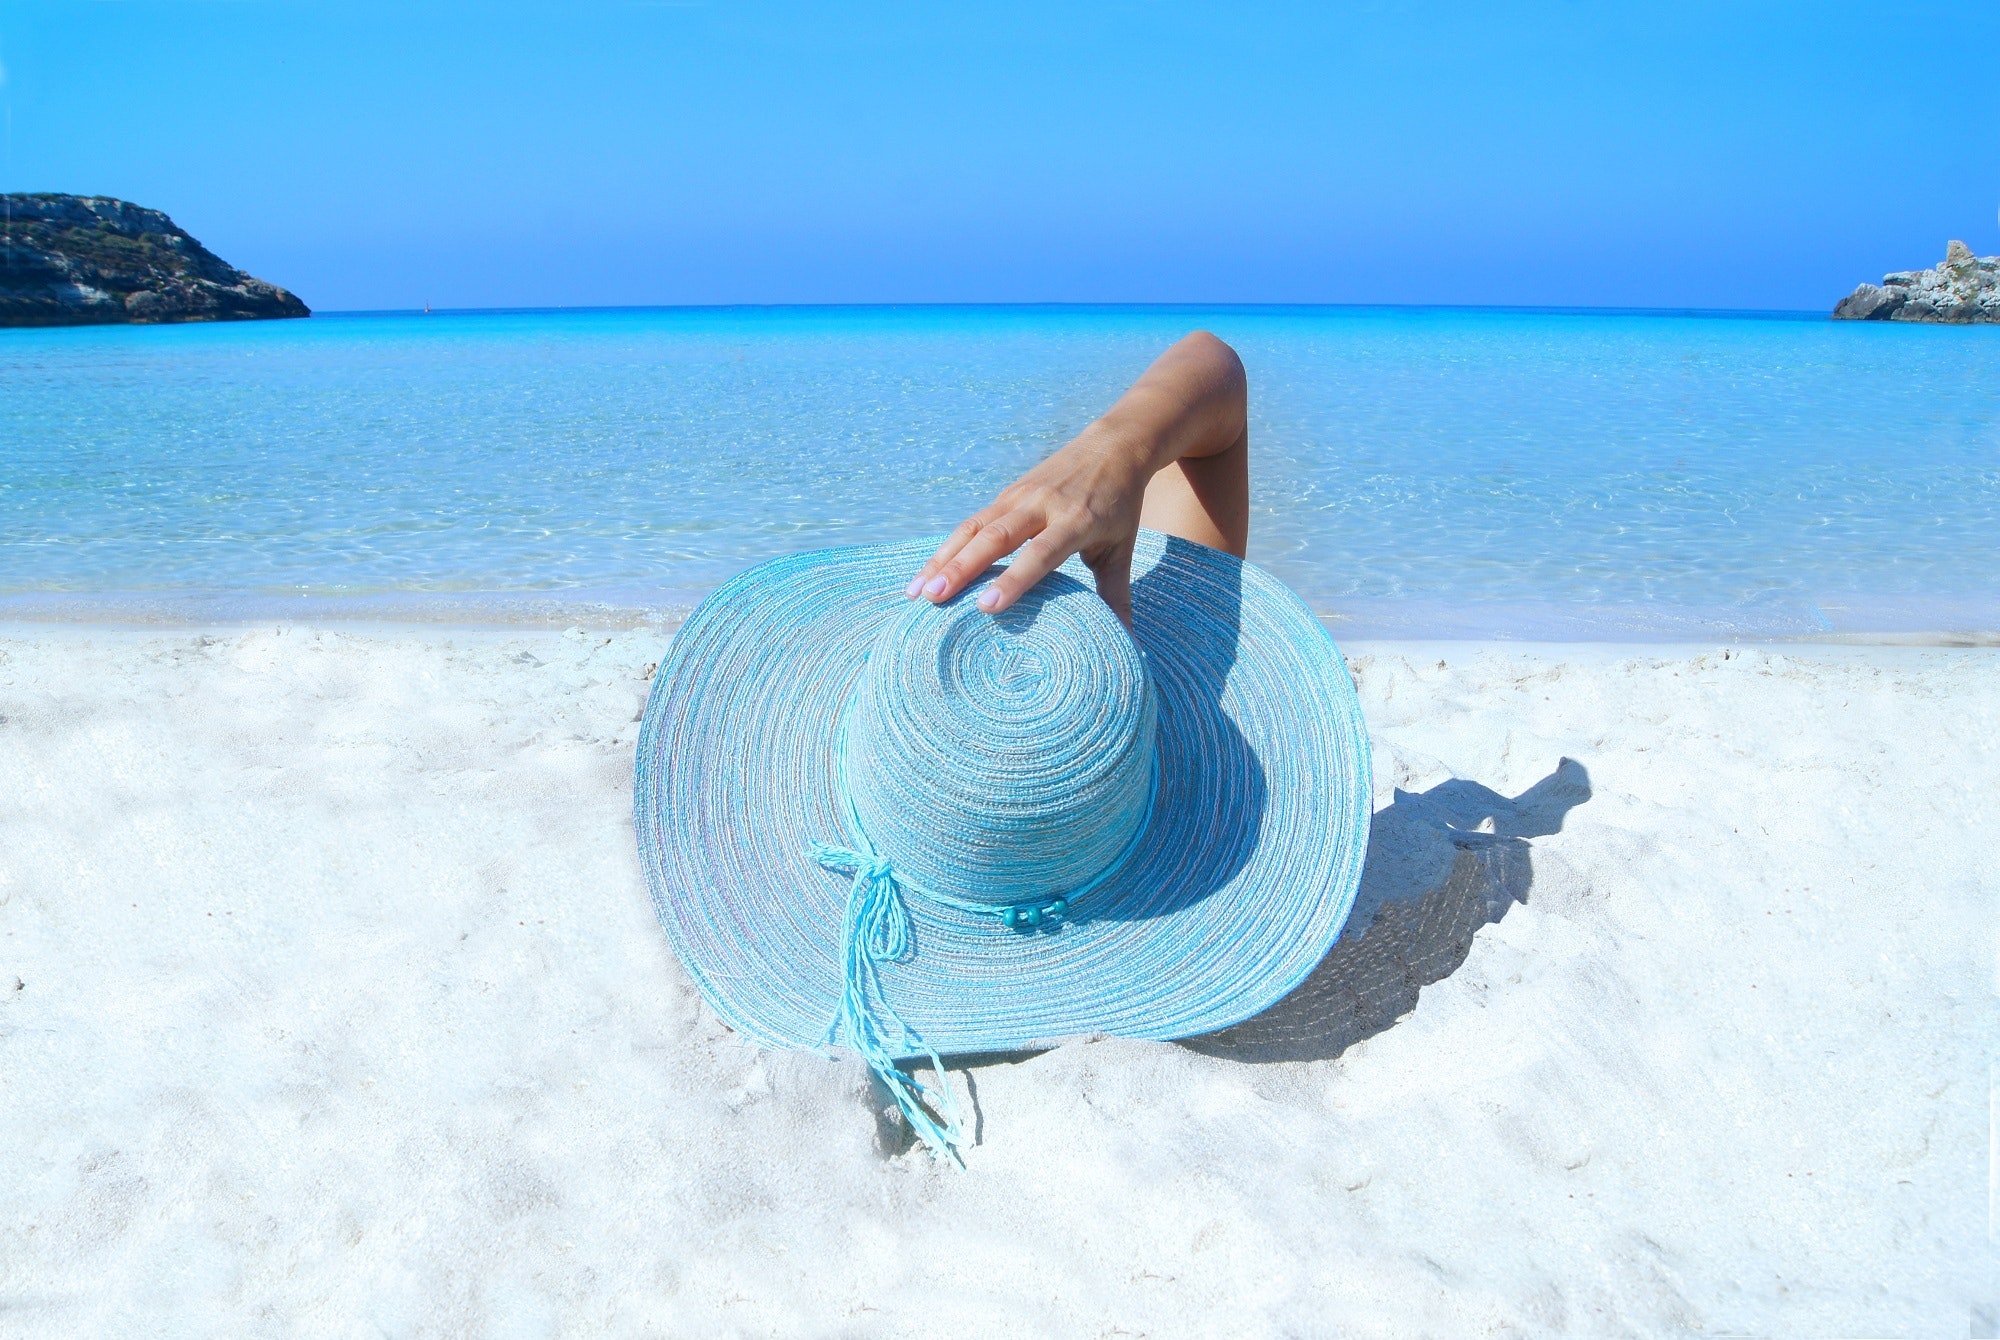 Kobieta leżąca na plaży z wielkim niebieskim kapeluszem, który przysłania ją całą